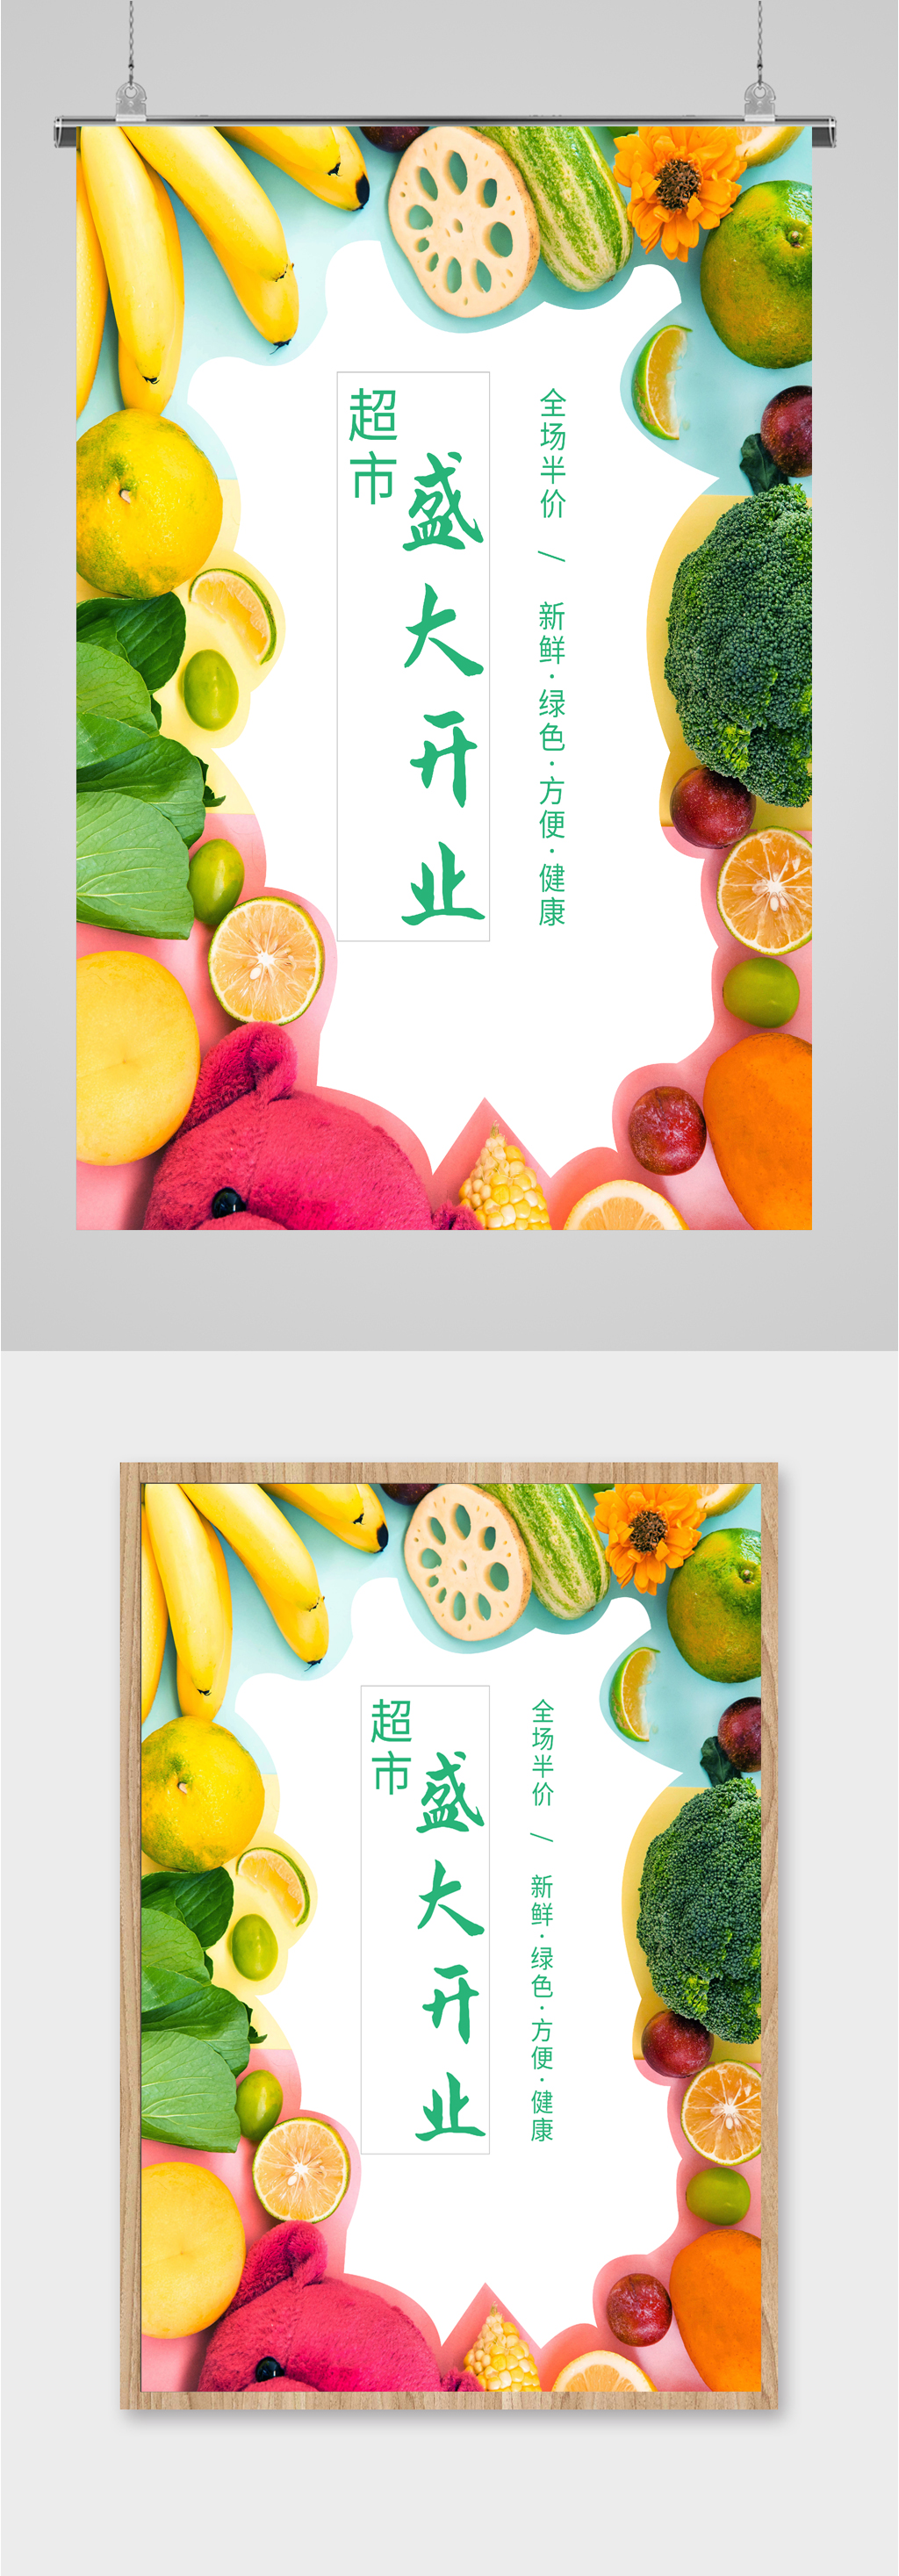 水果生鲜开业活动海报立即下载清新生鲜水果开业活动宣传单立即下载